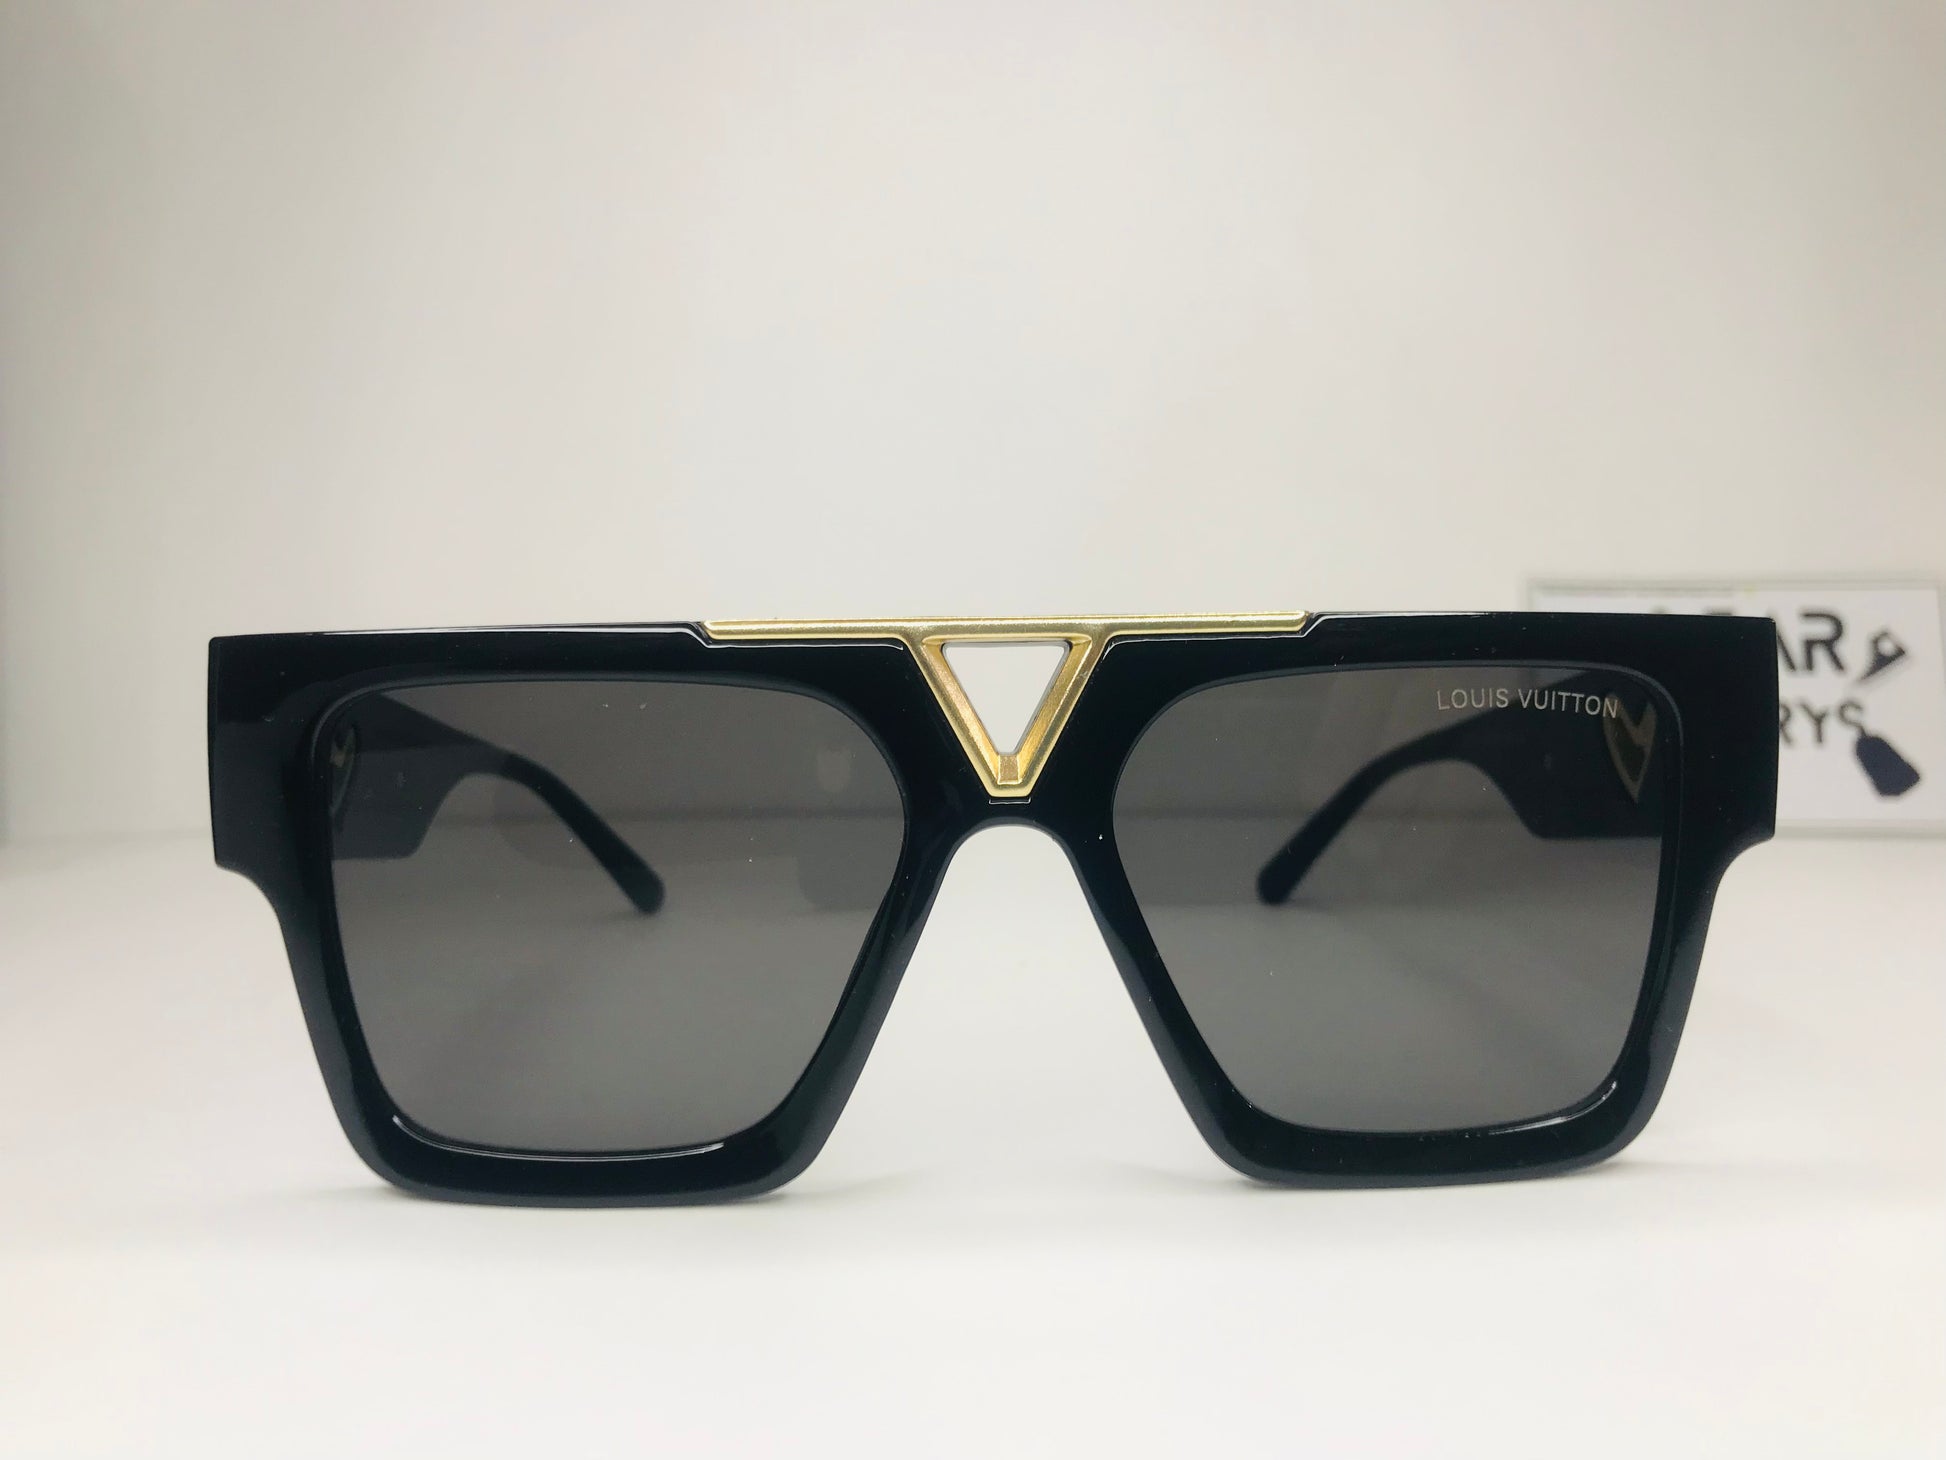 Lv newest sunglasses - WEARLUXURYSWEARLUXURYSnull